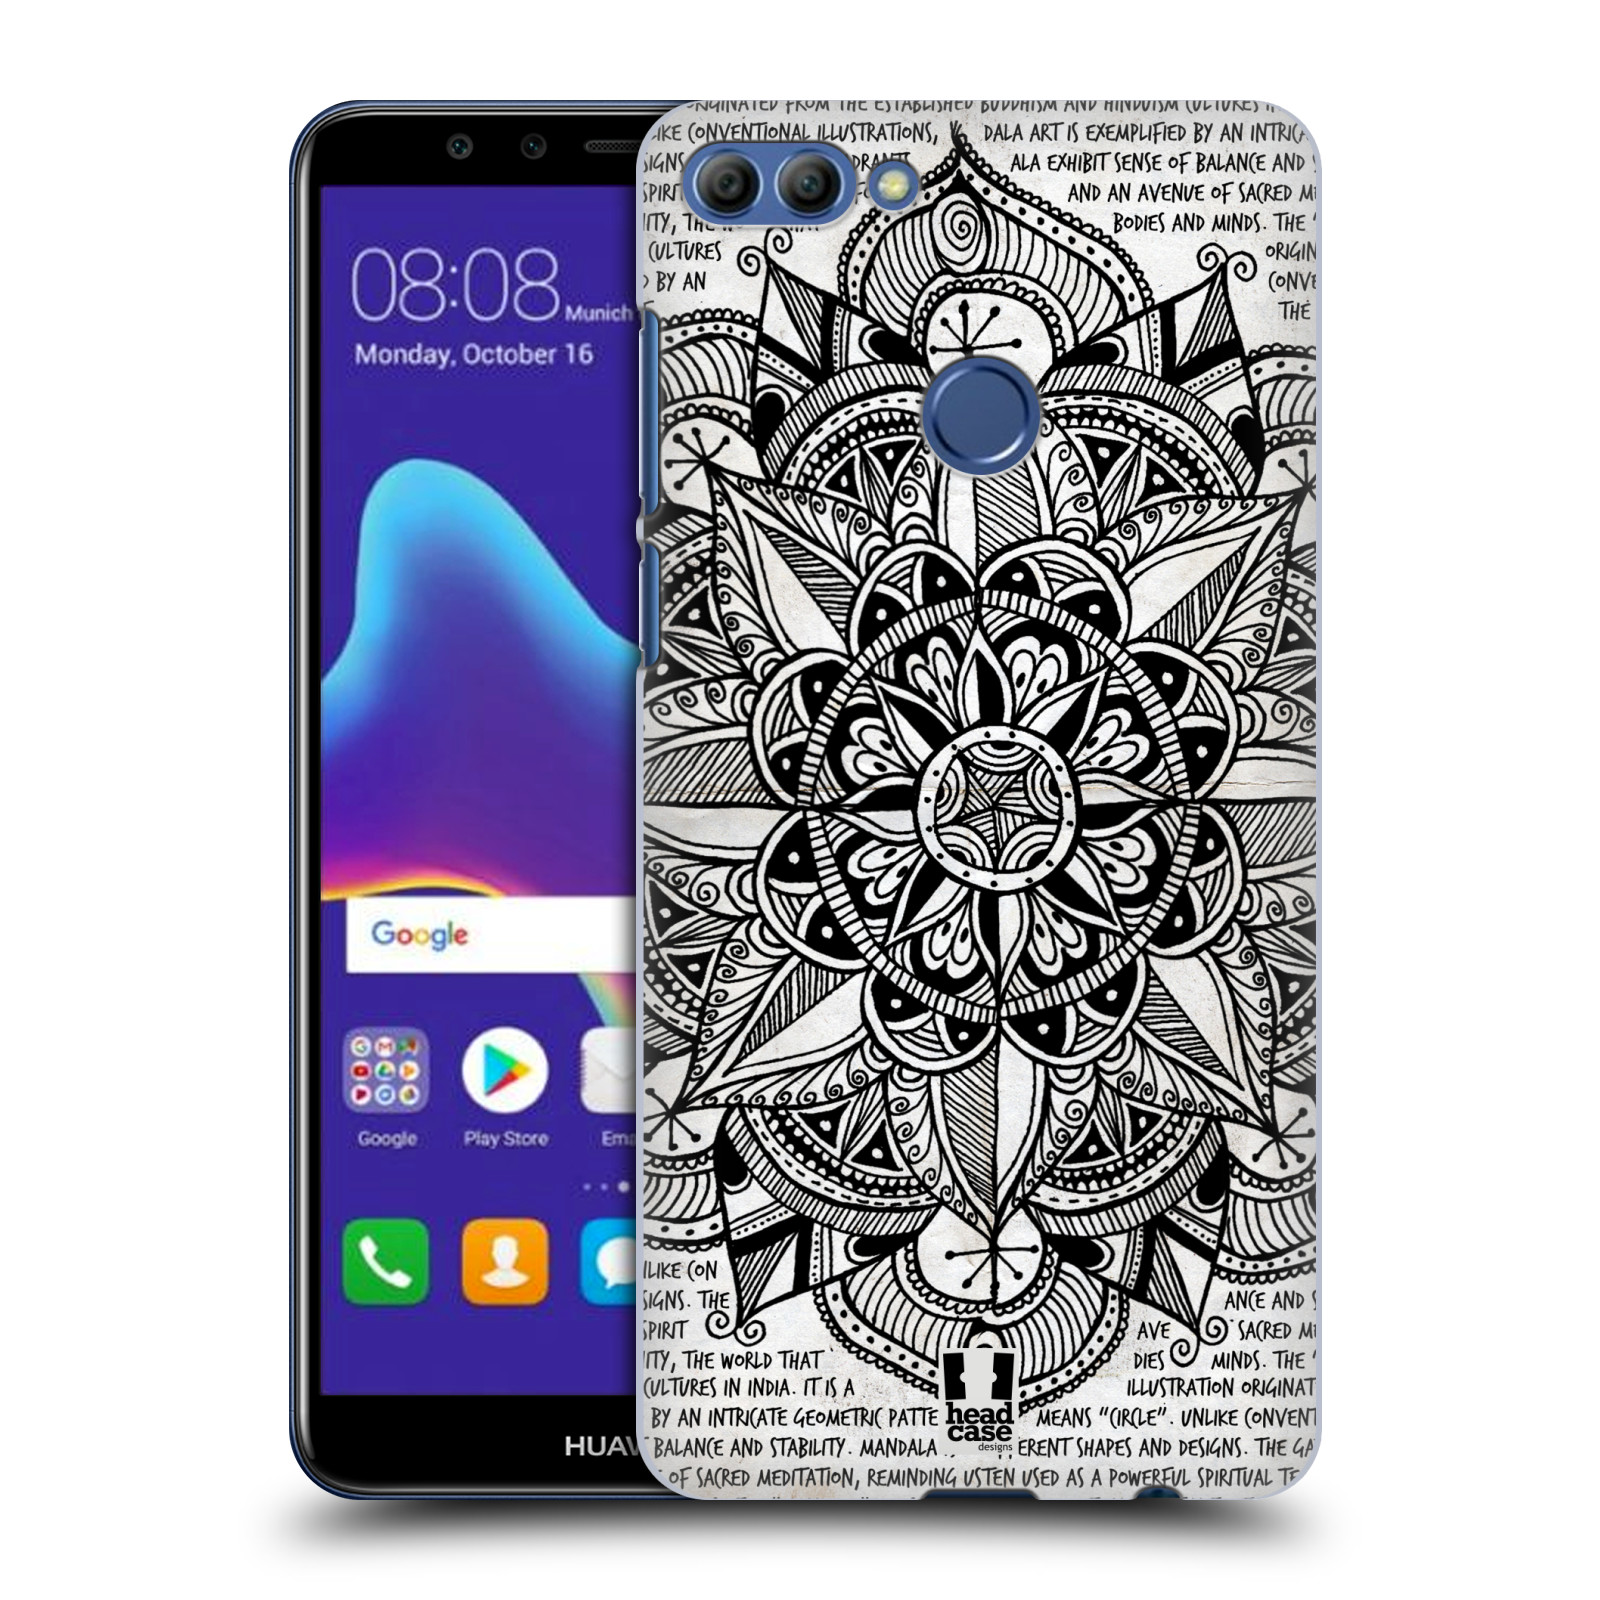 HEAD CASE plastový obal na mobil Huawei Y9 2018 vzor Indie Mandala slunce barevná ČERNÁ A BÍLÁ MAPA